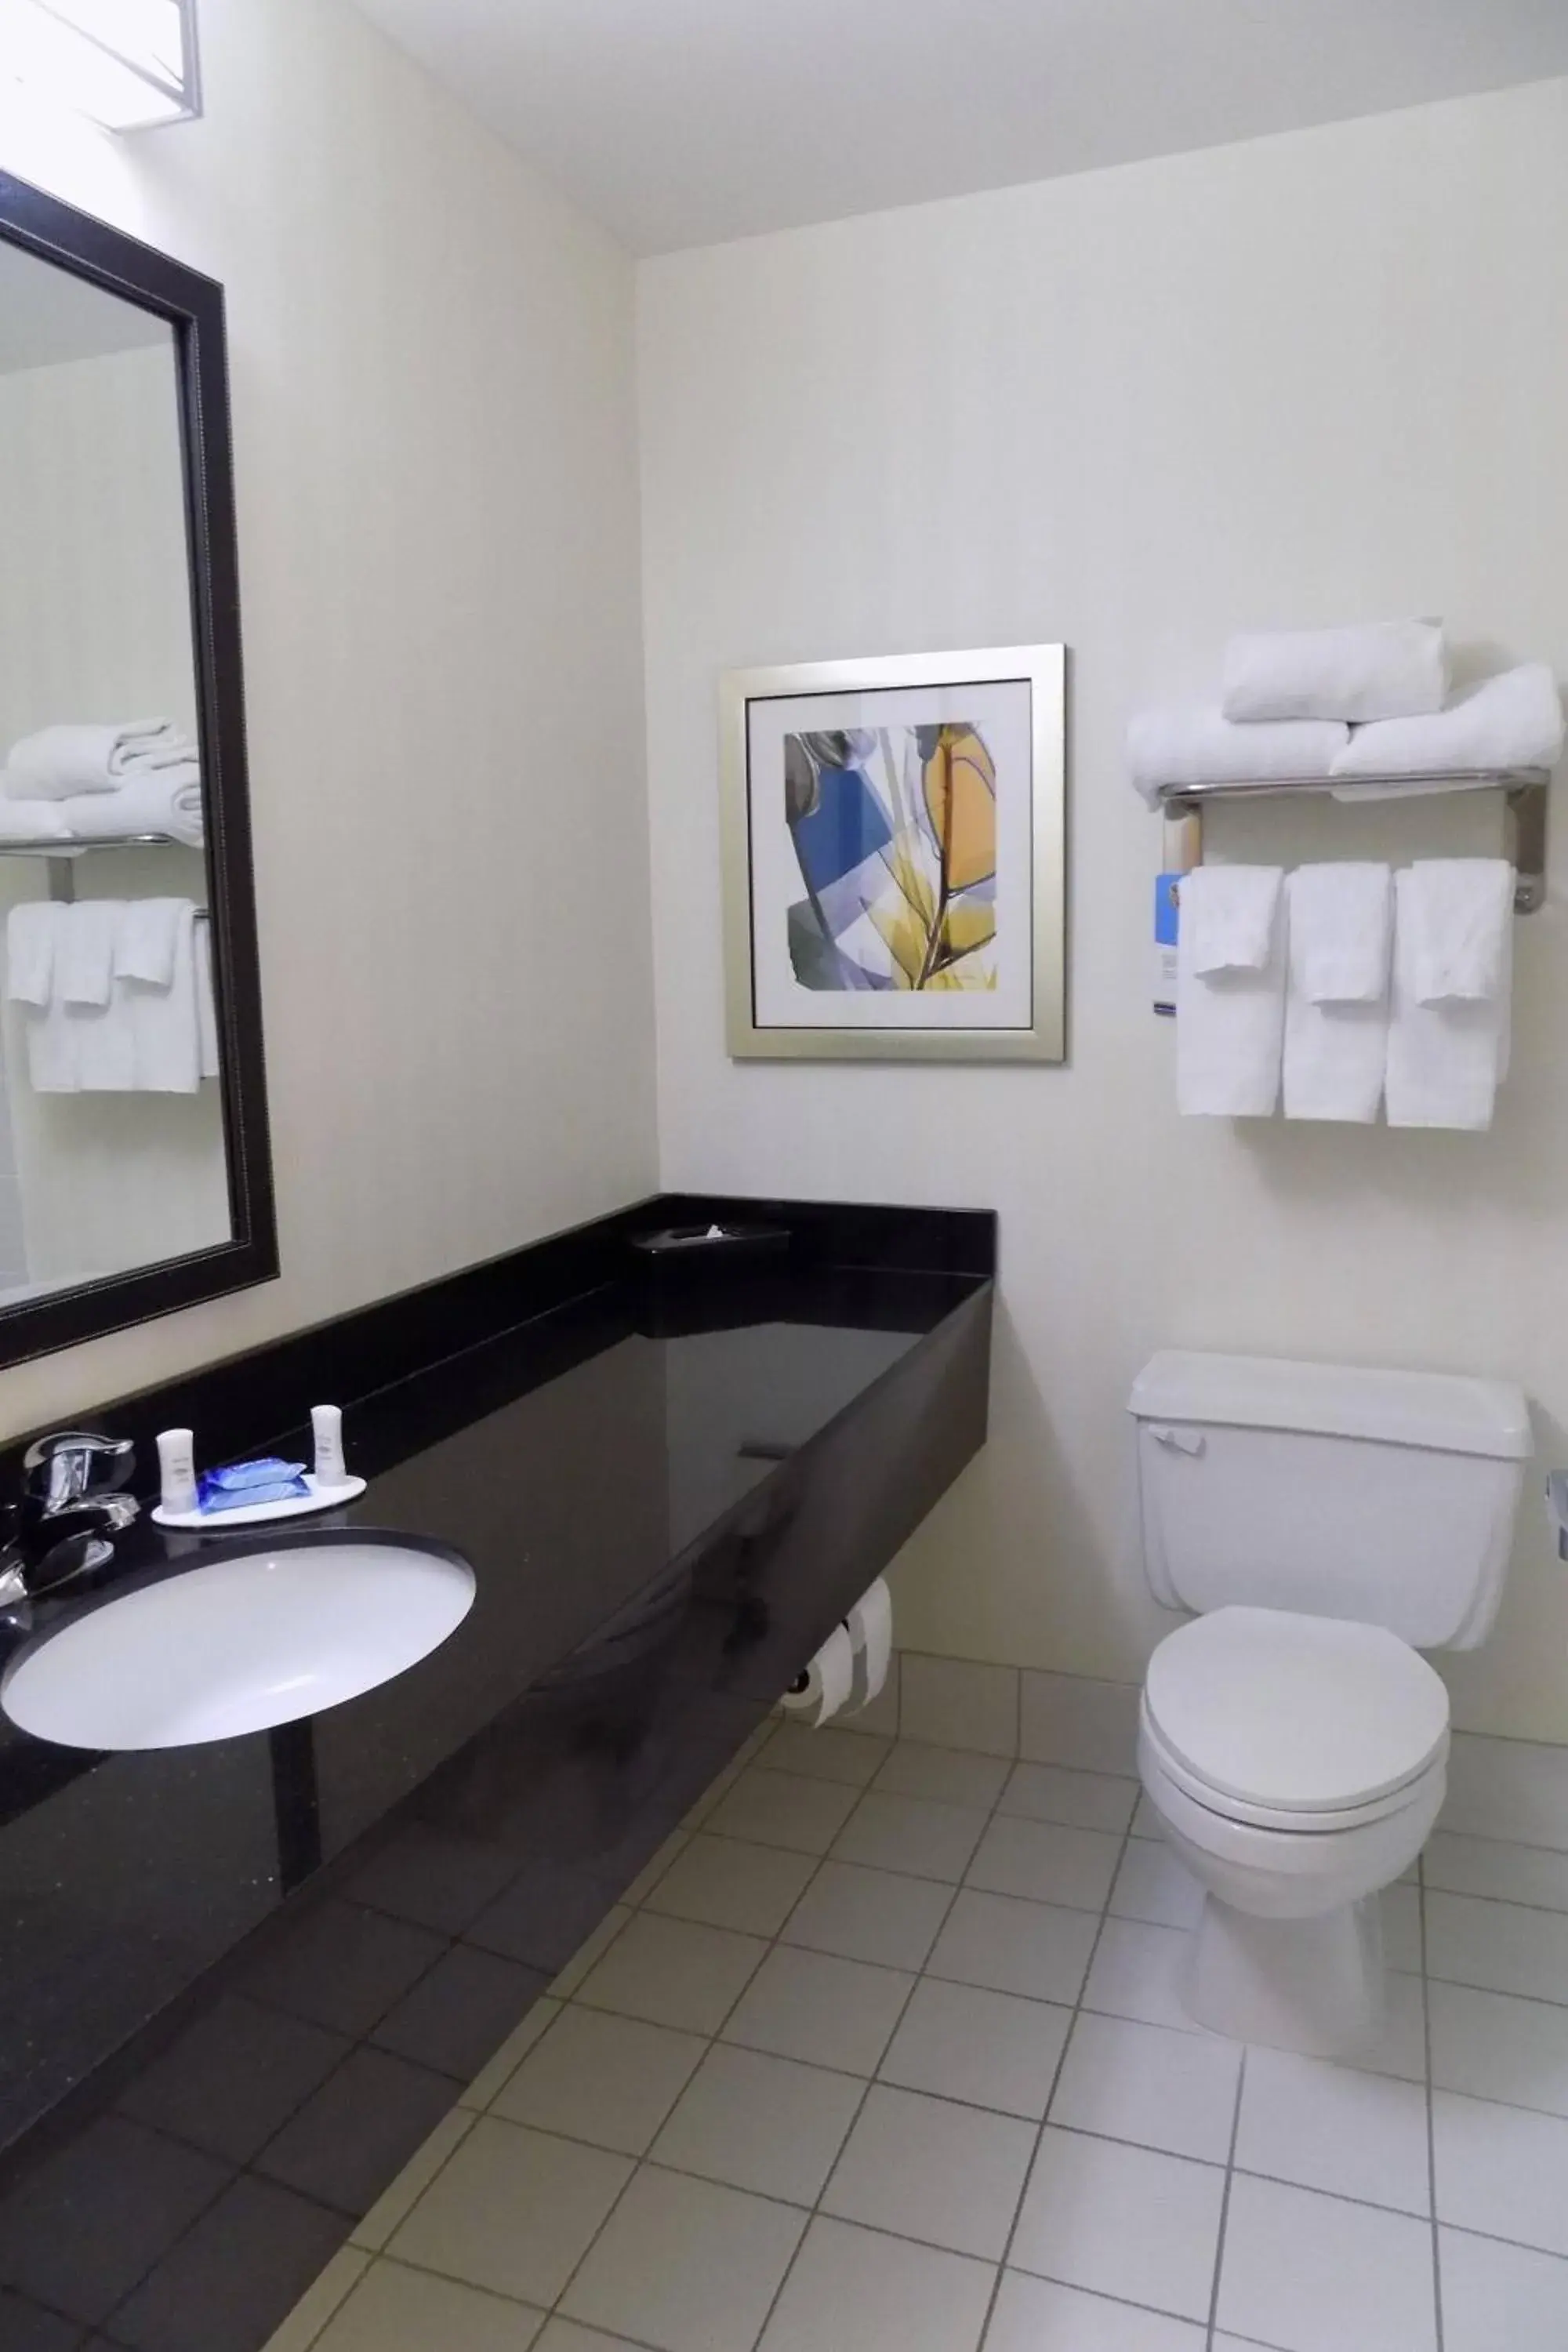 Bathroom in Fairfield Inn by Marriott Indianapolis South